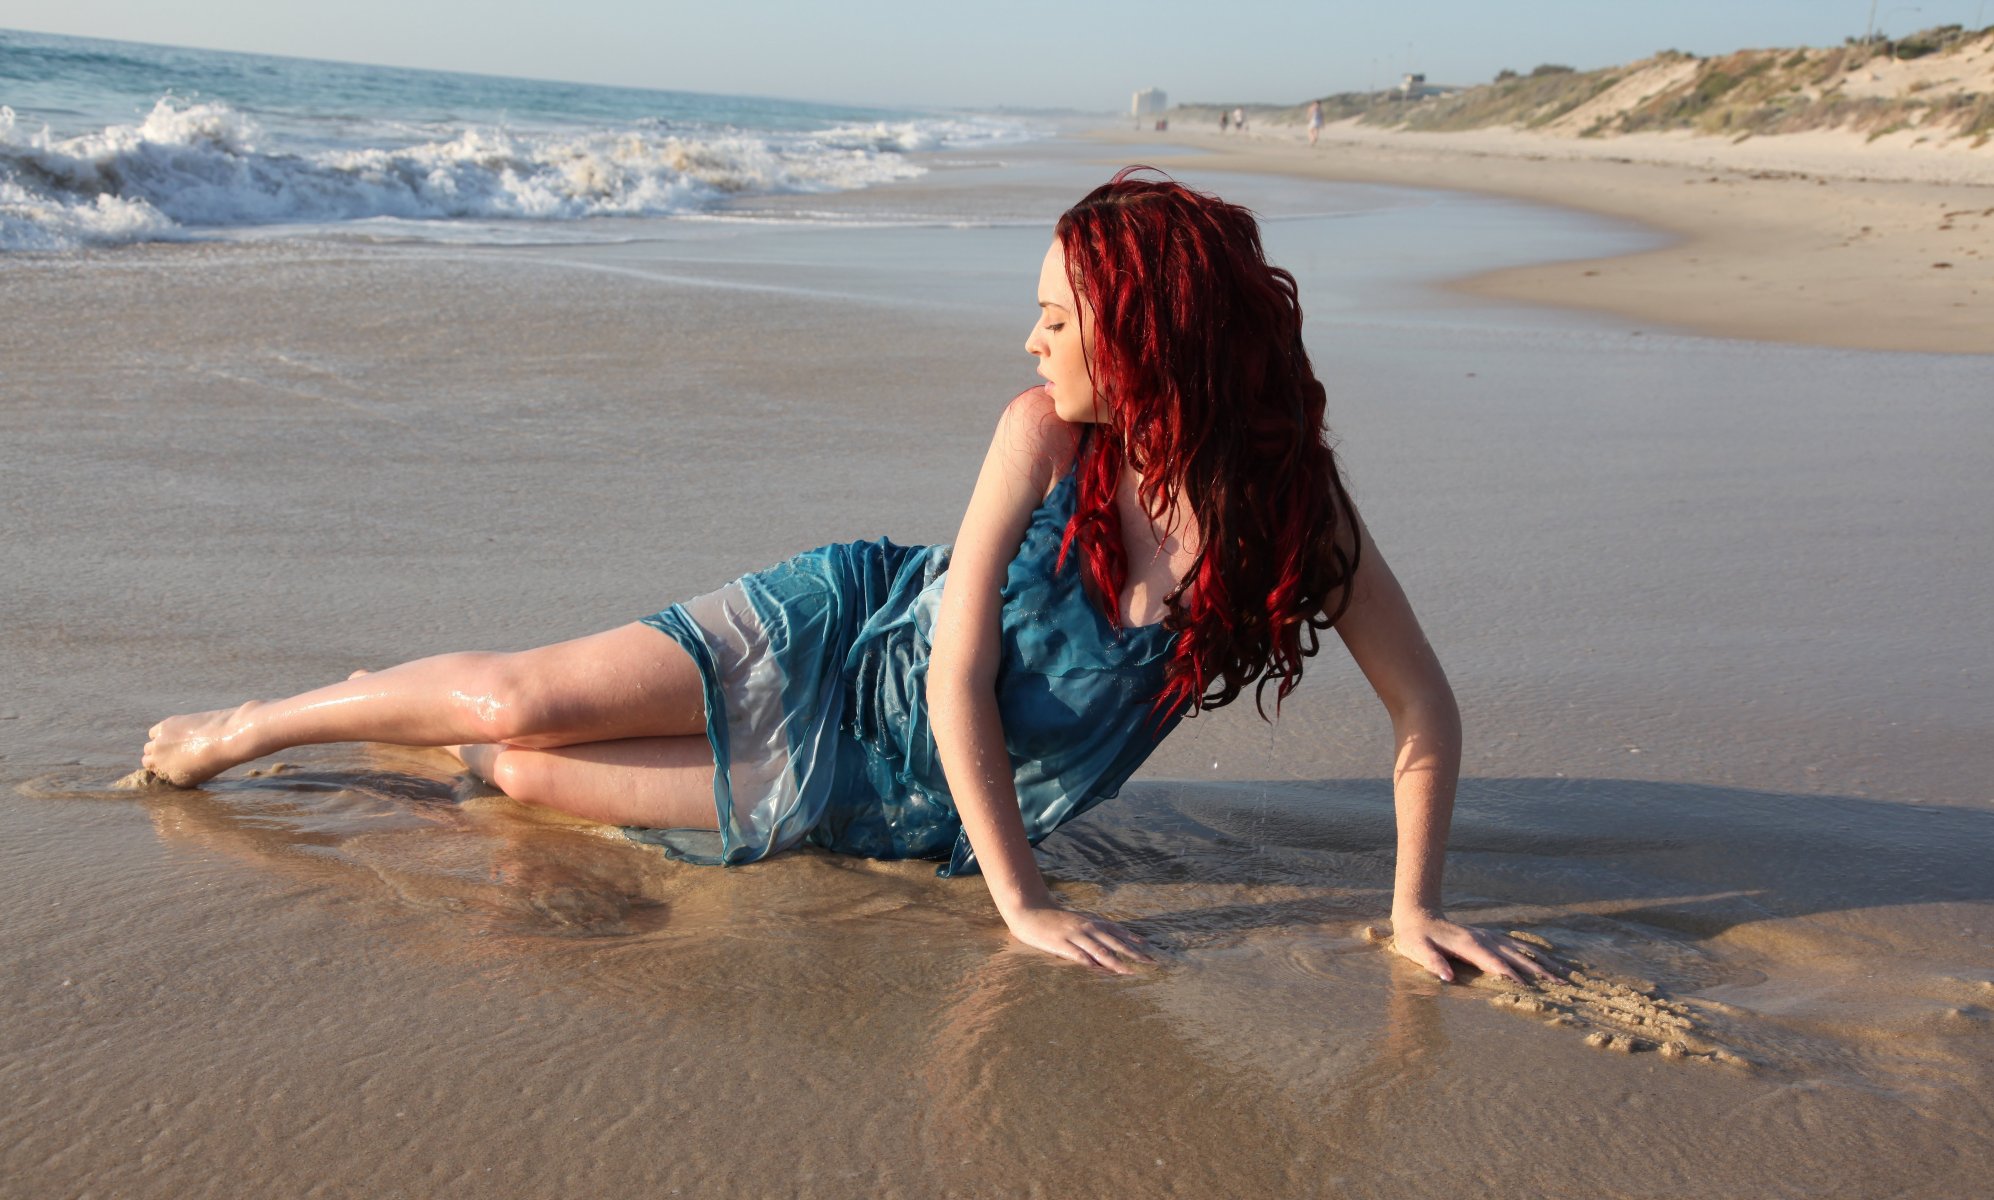 Обои с тегом:девушка, красные волосы, поза, профиль, песок, пляж, море, вол...